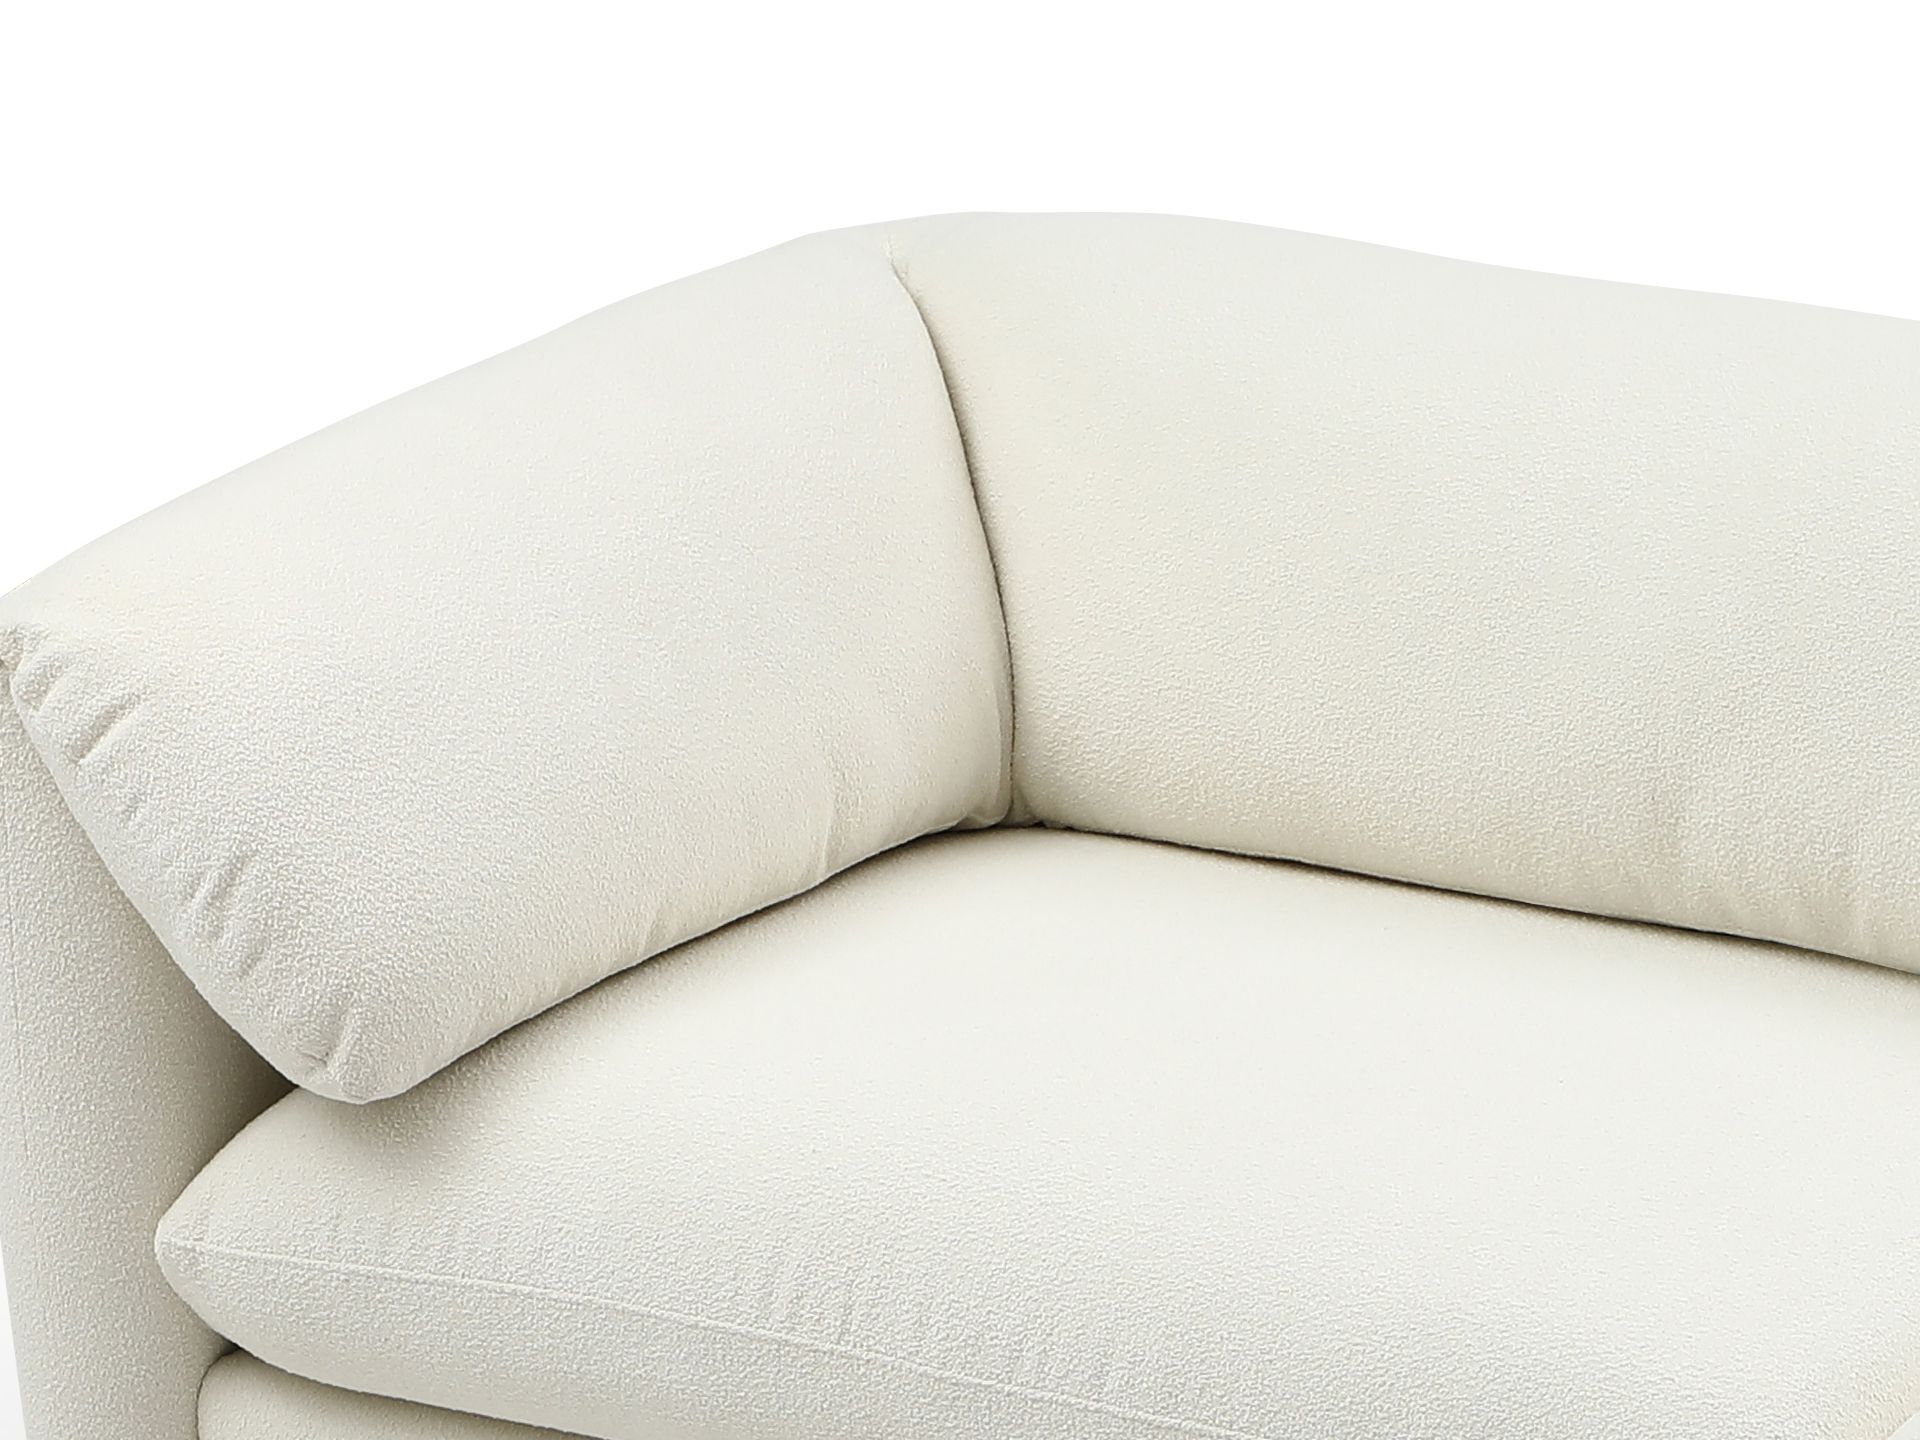 Marion 3 Seater Sofa - Cream